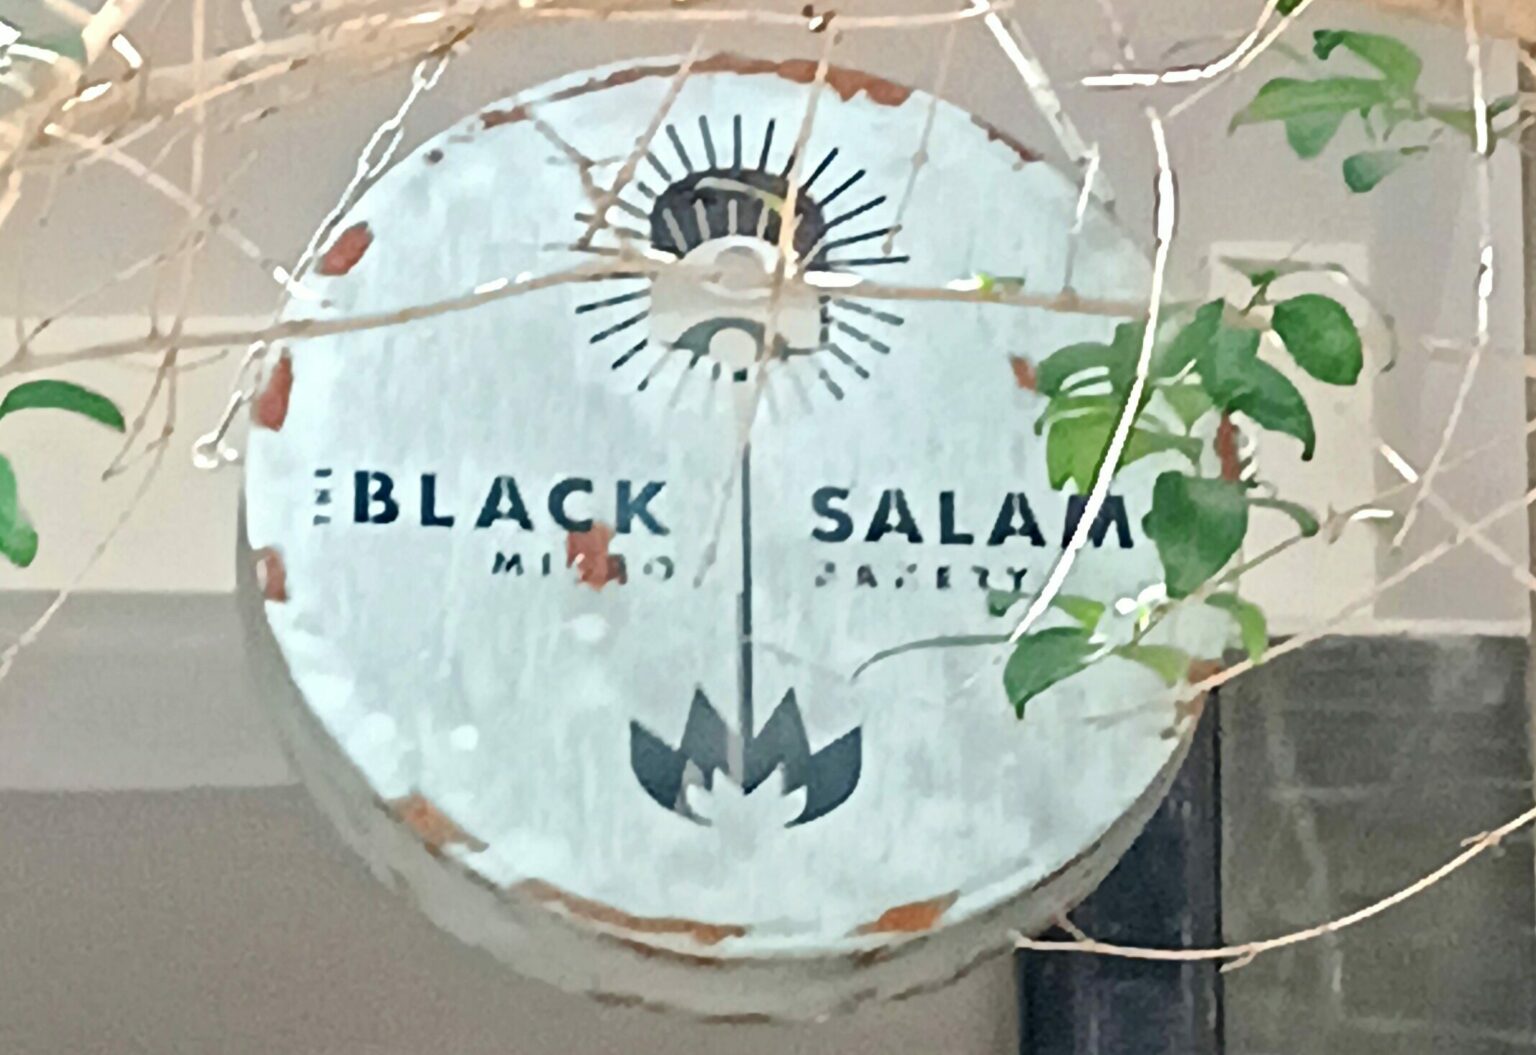 Black salami